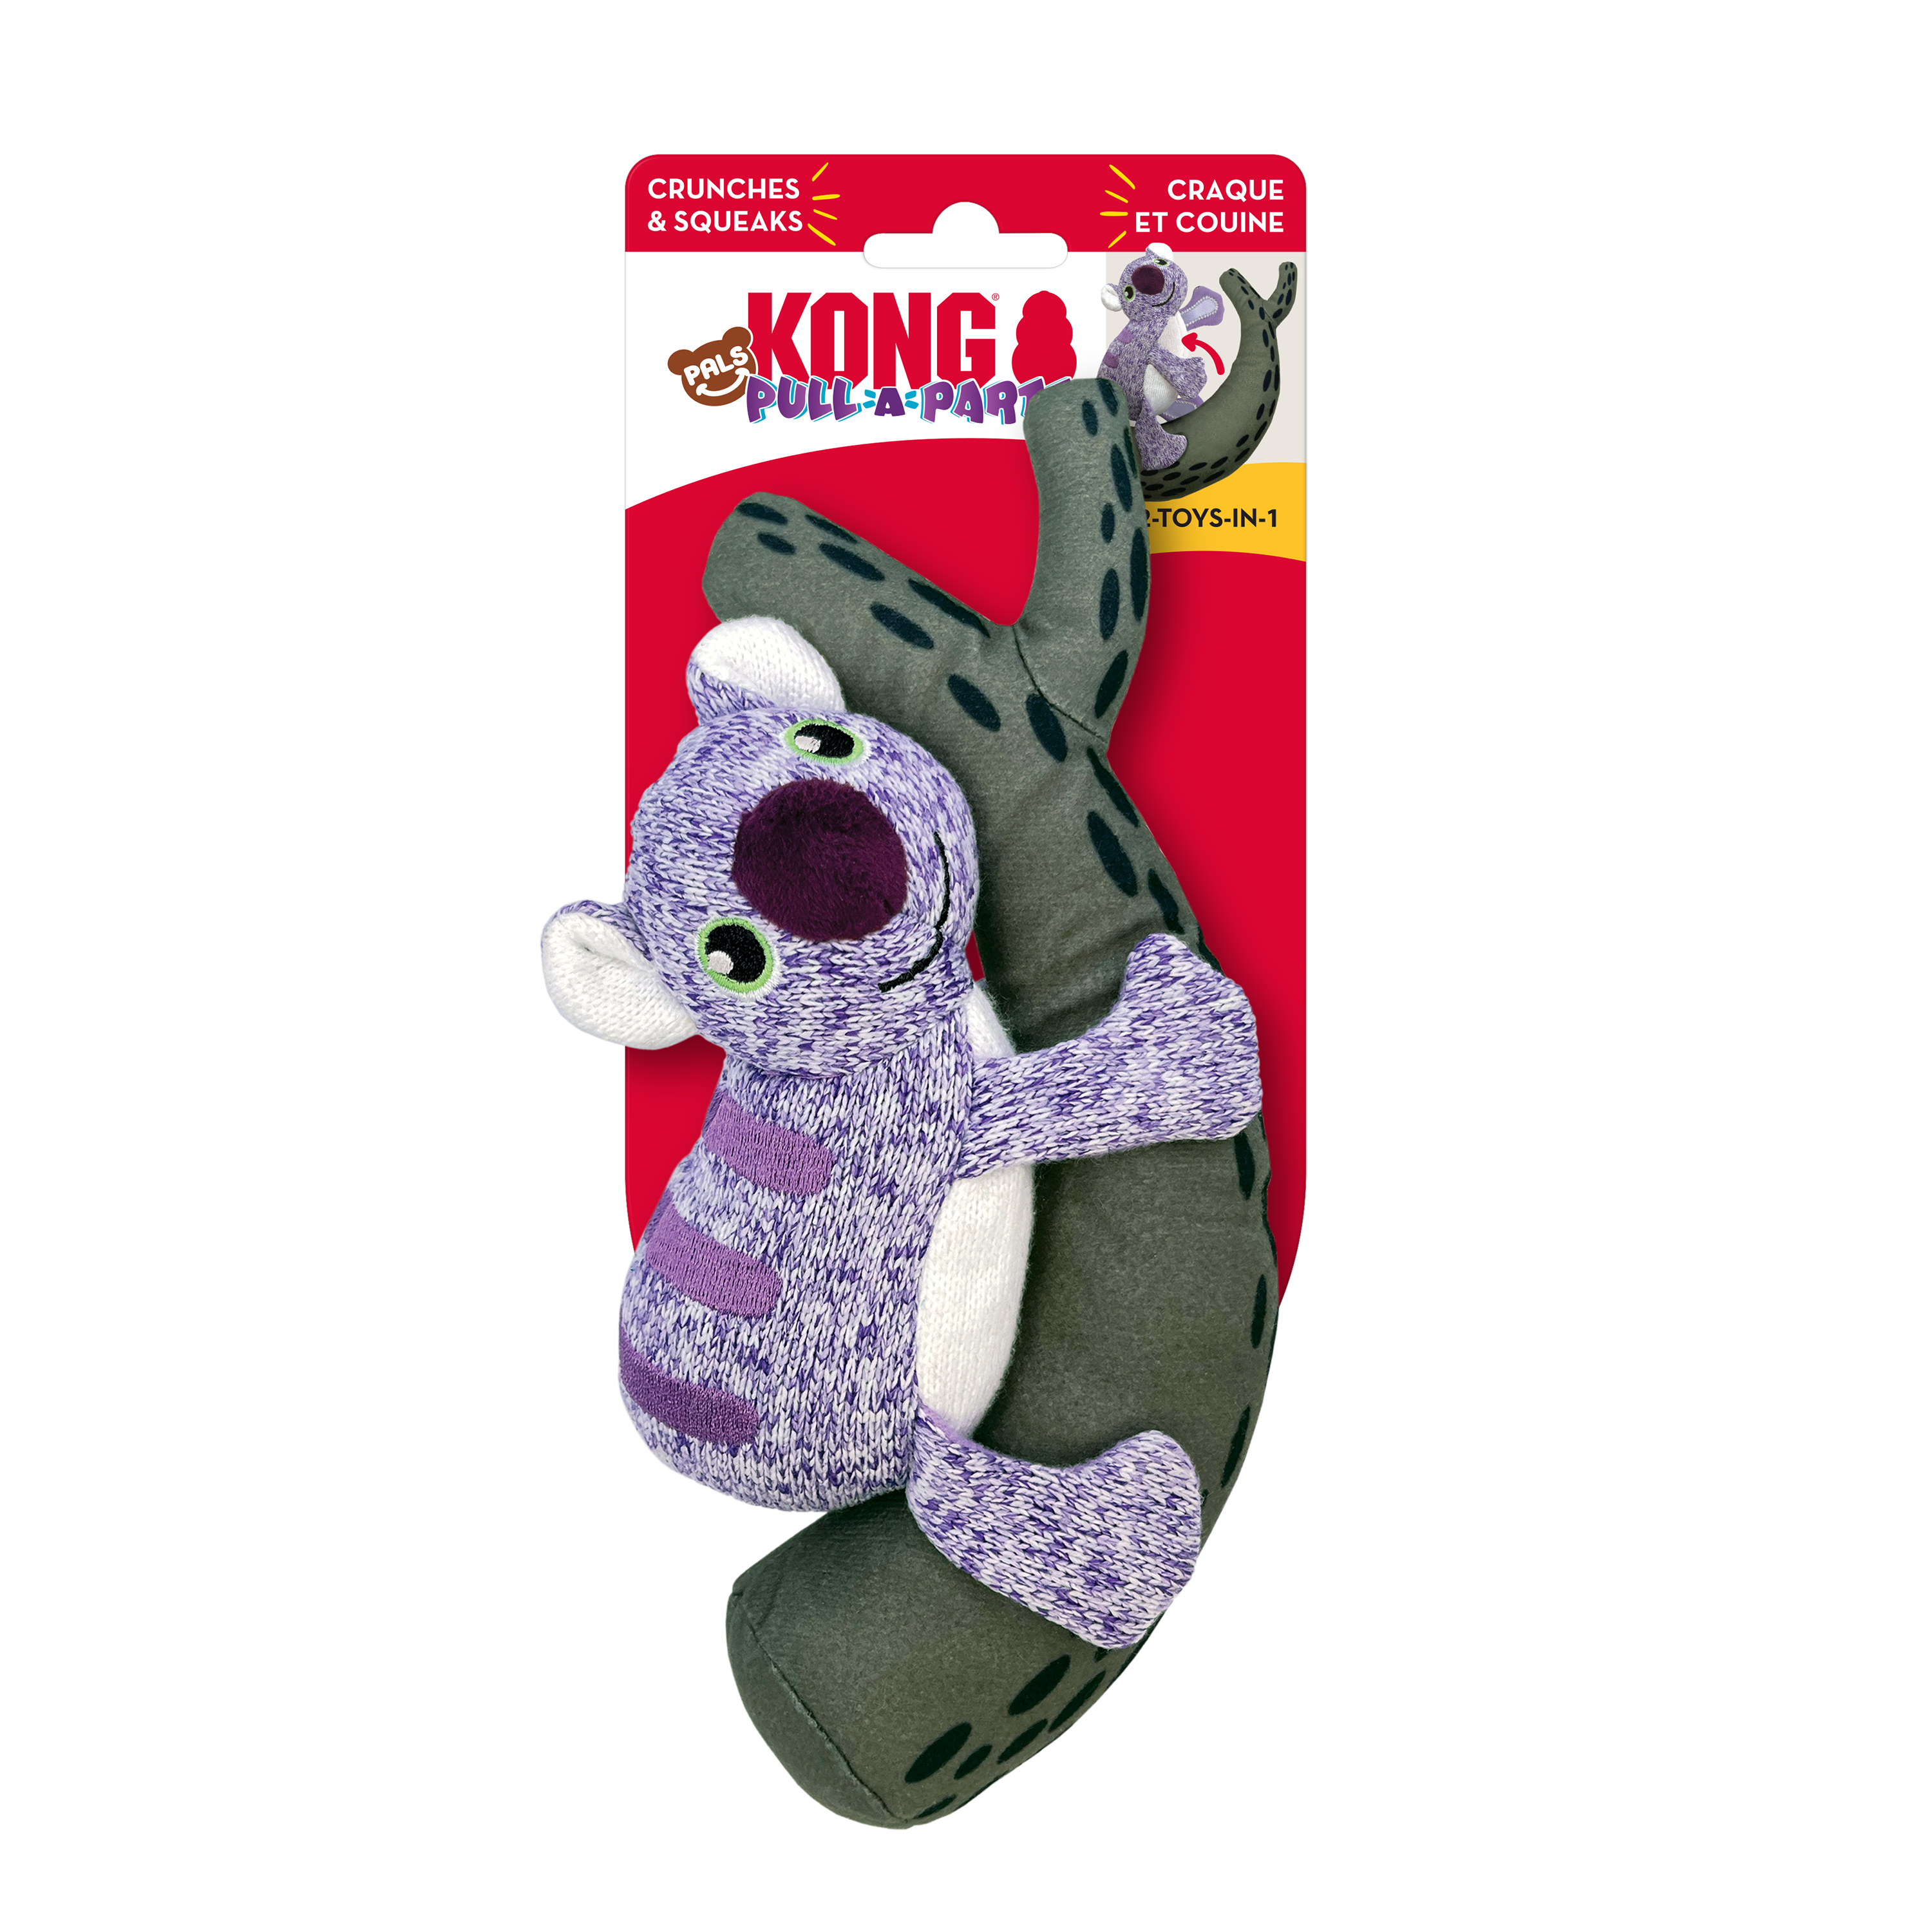 Imagem do produto Pull-A-Partz Pals Koala na embalagem